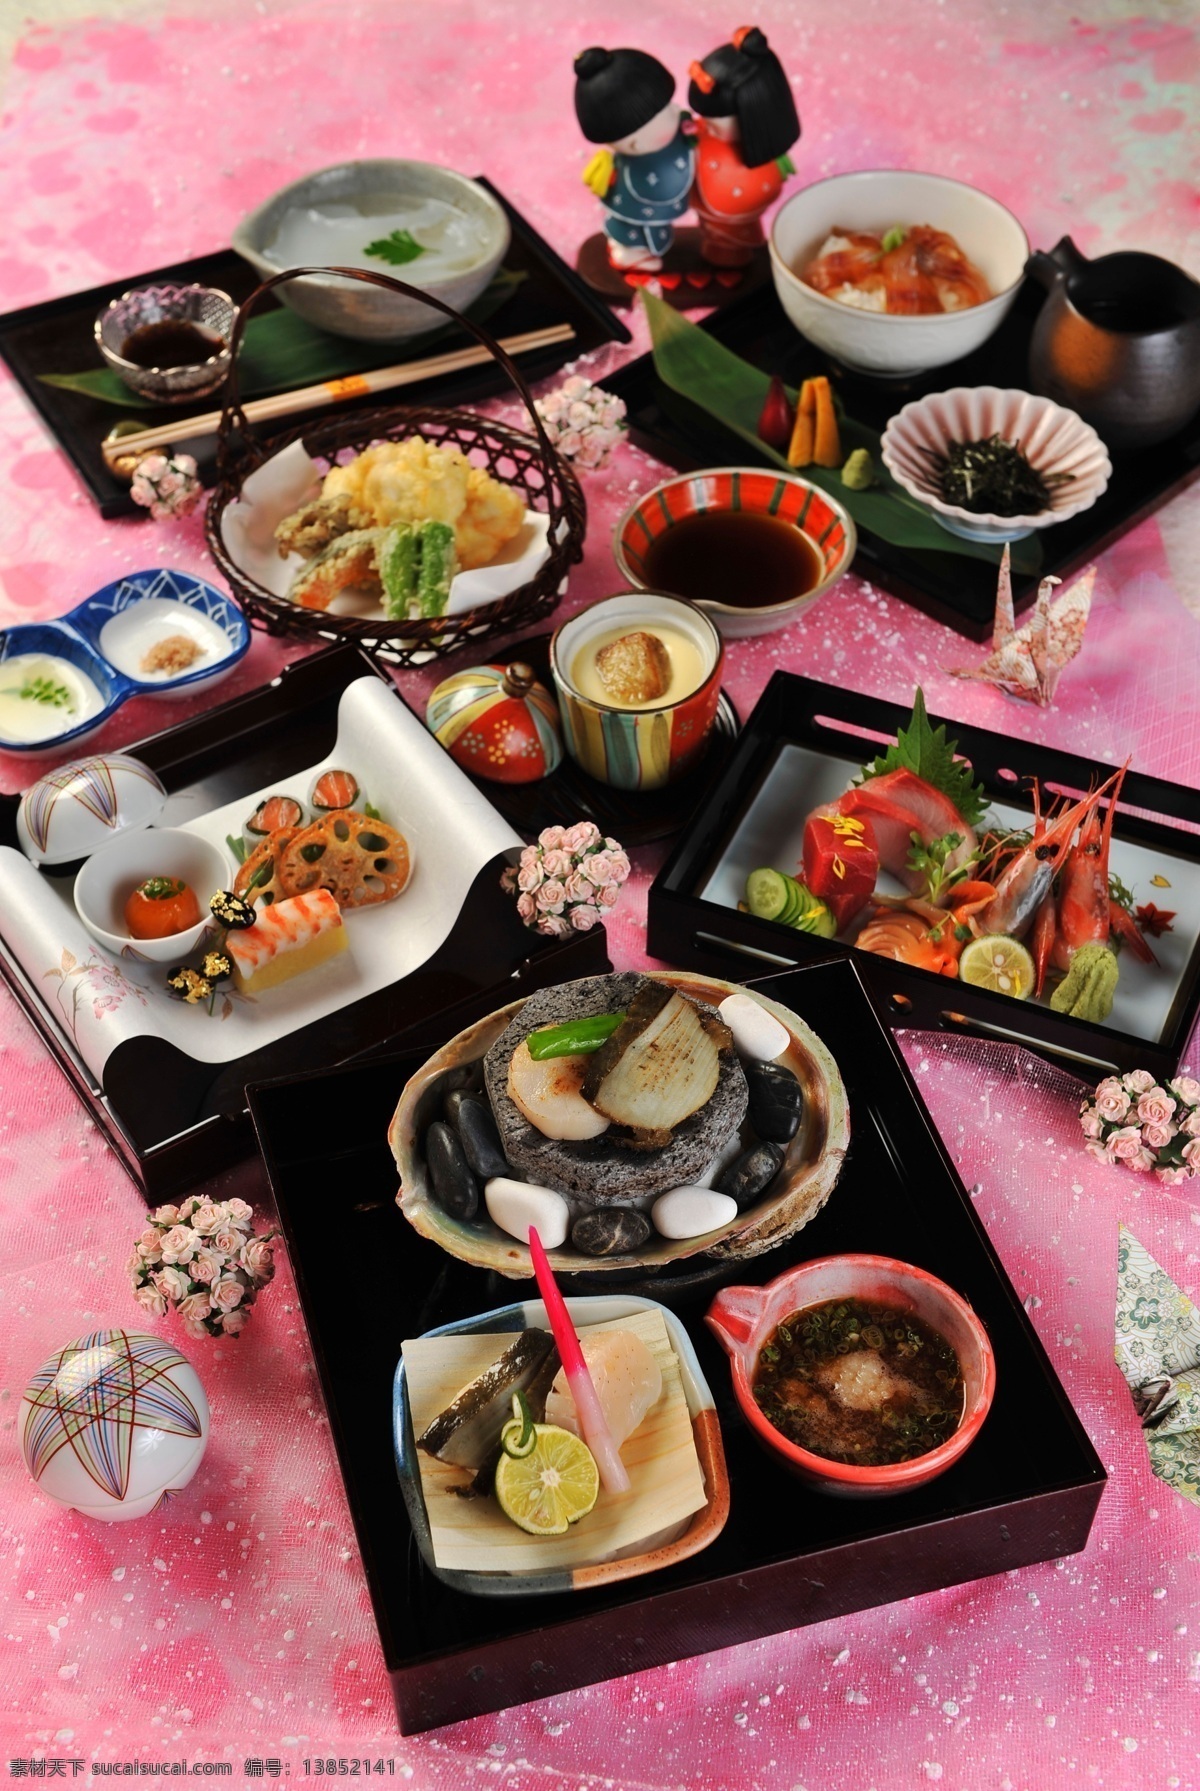 日本料理 寿司 刺身 海鲜刺身 生鱼片 料理 美食 美味 传统美食 餐饮美食